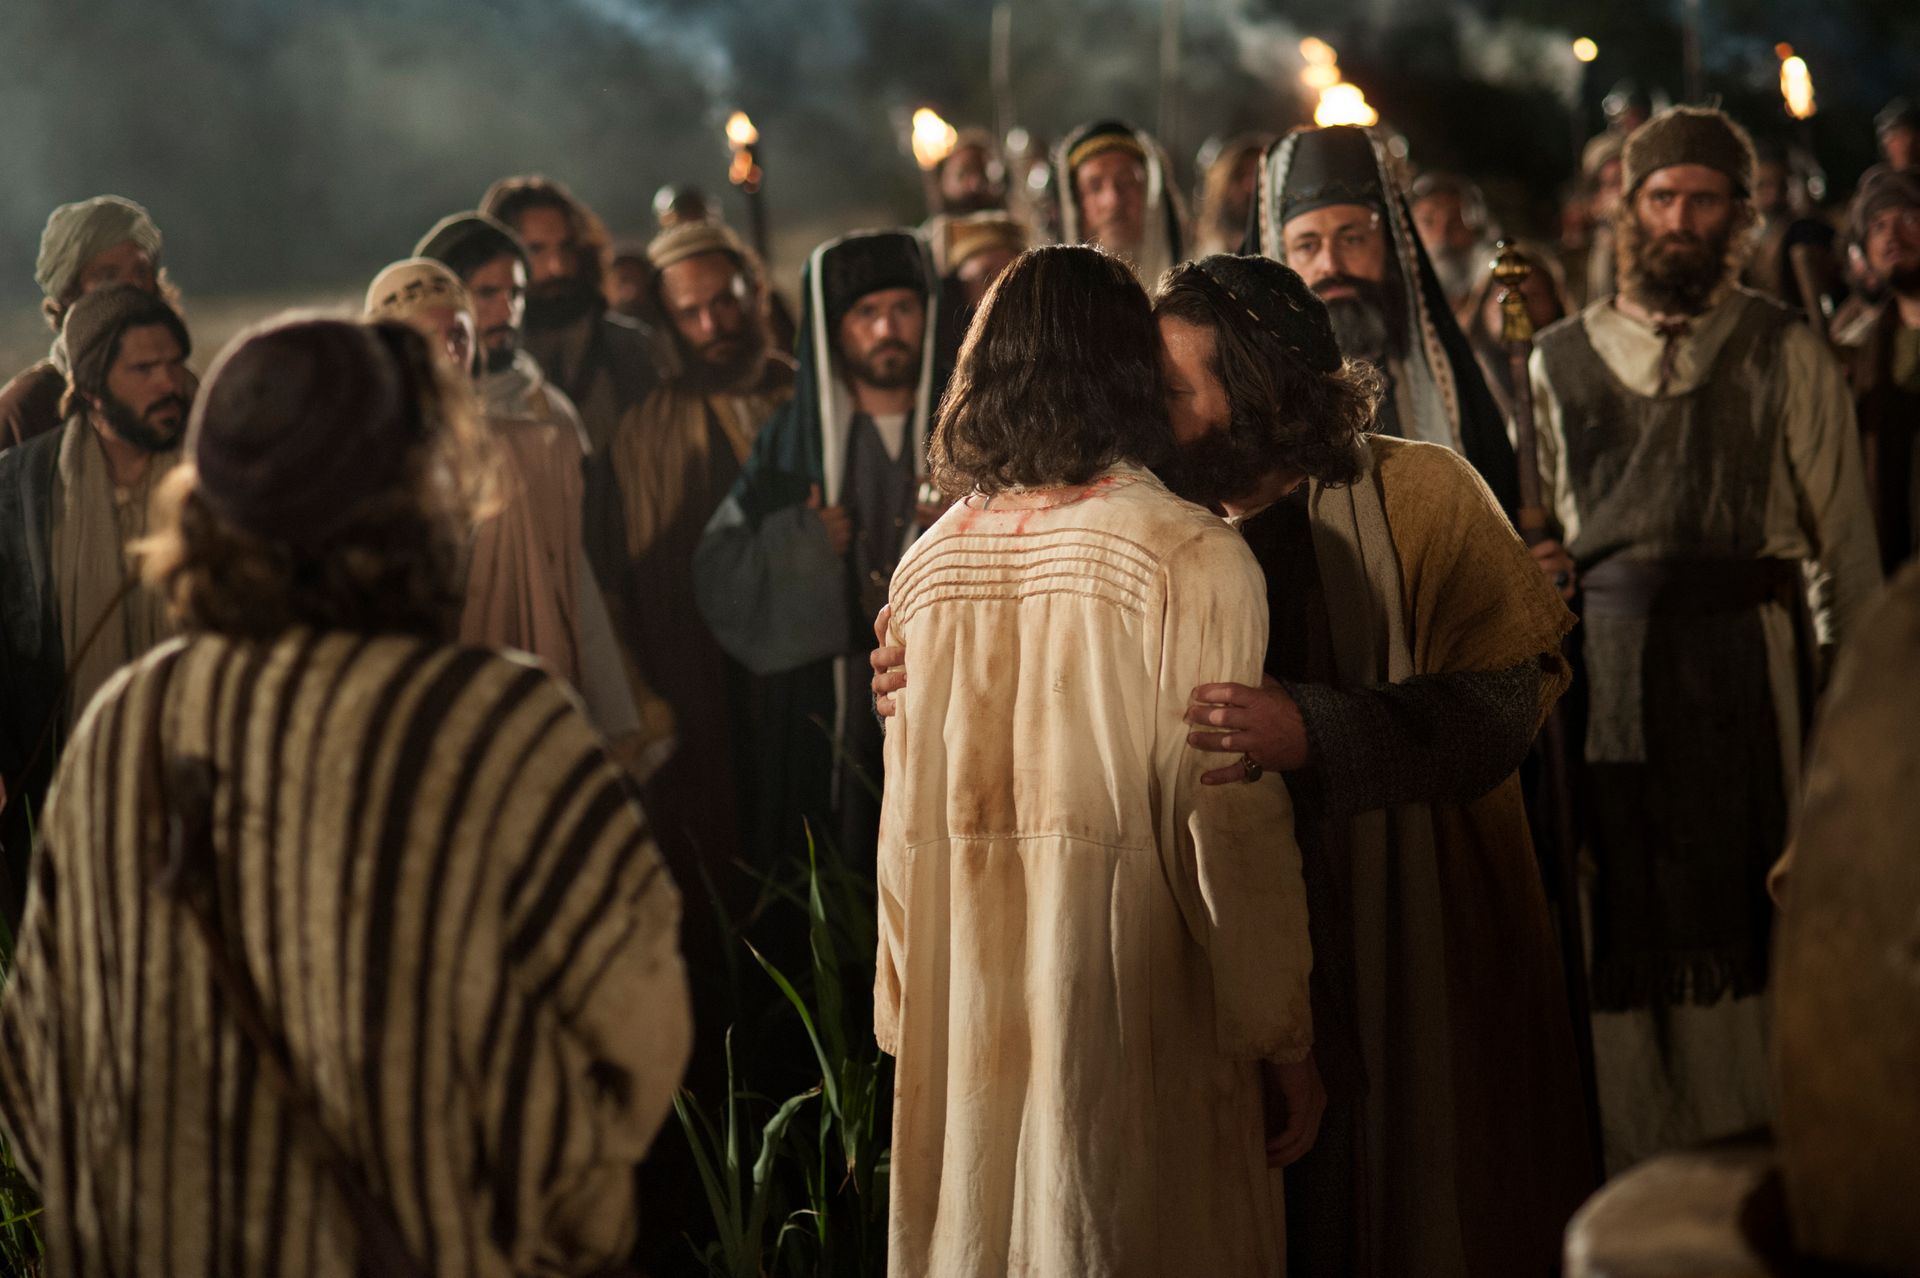 Judas le da a Cristo un beso en la mejilla como una señal para el soldado de que Jesús es quien debe ser arrestado.